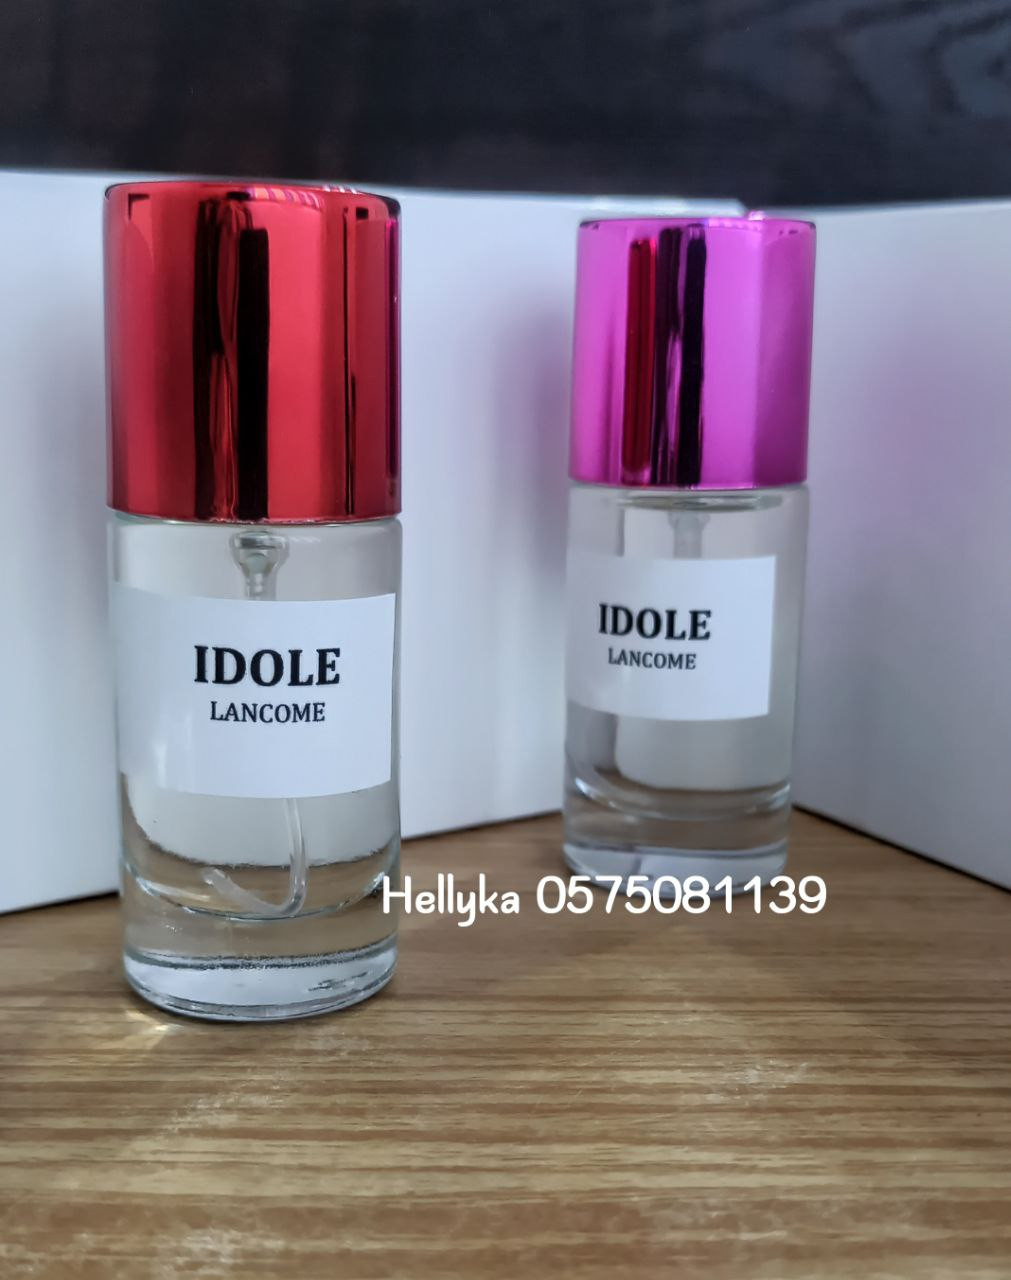 Essence de parfum Idole (Lancôme)